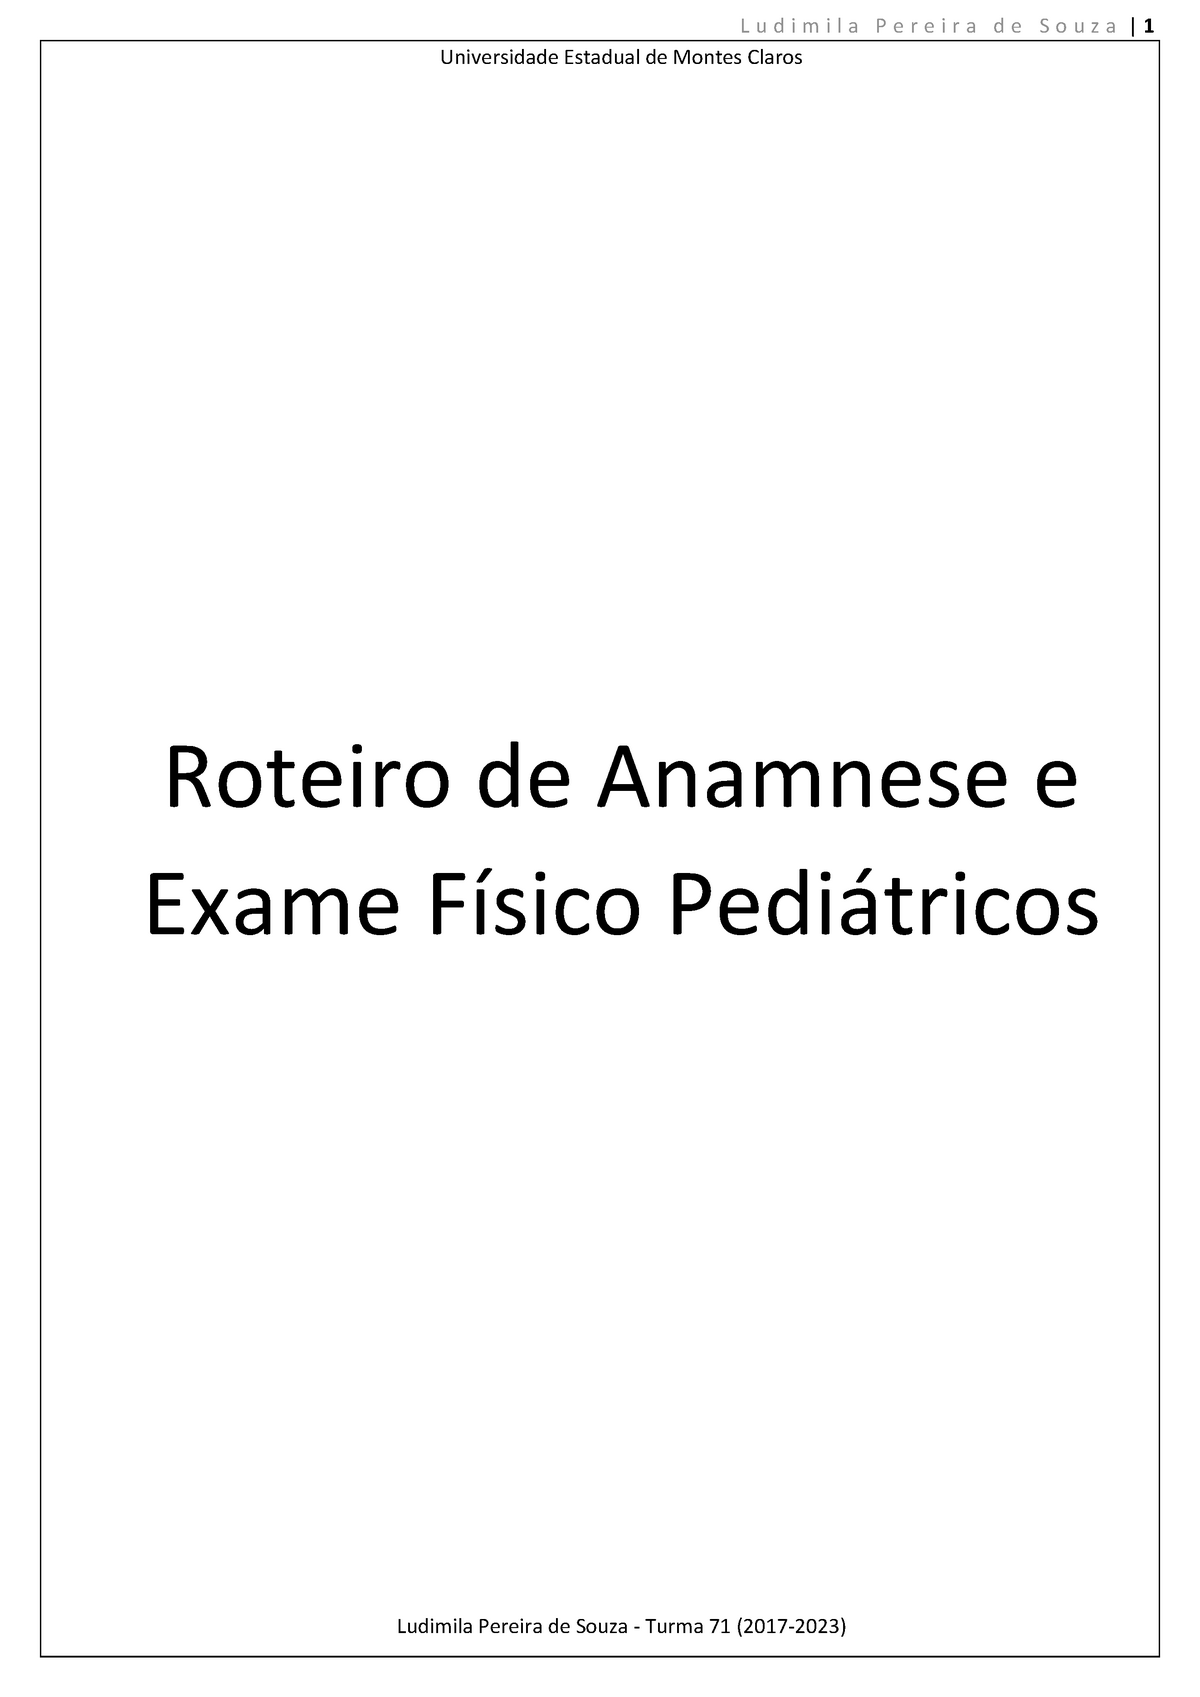 Modelo de documento: Roteiro de Anamnese para crianças e